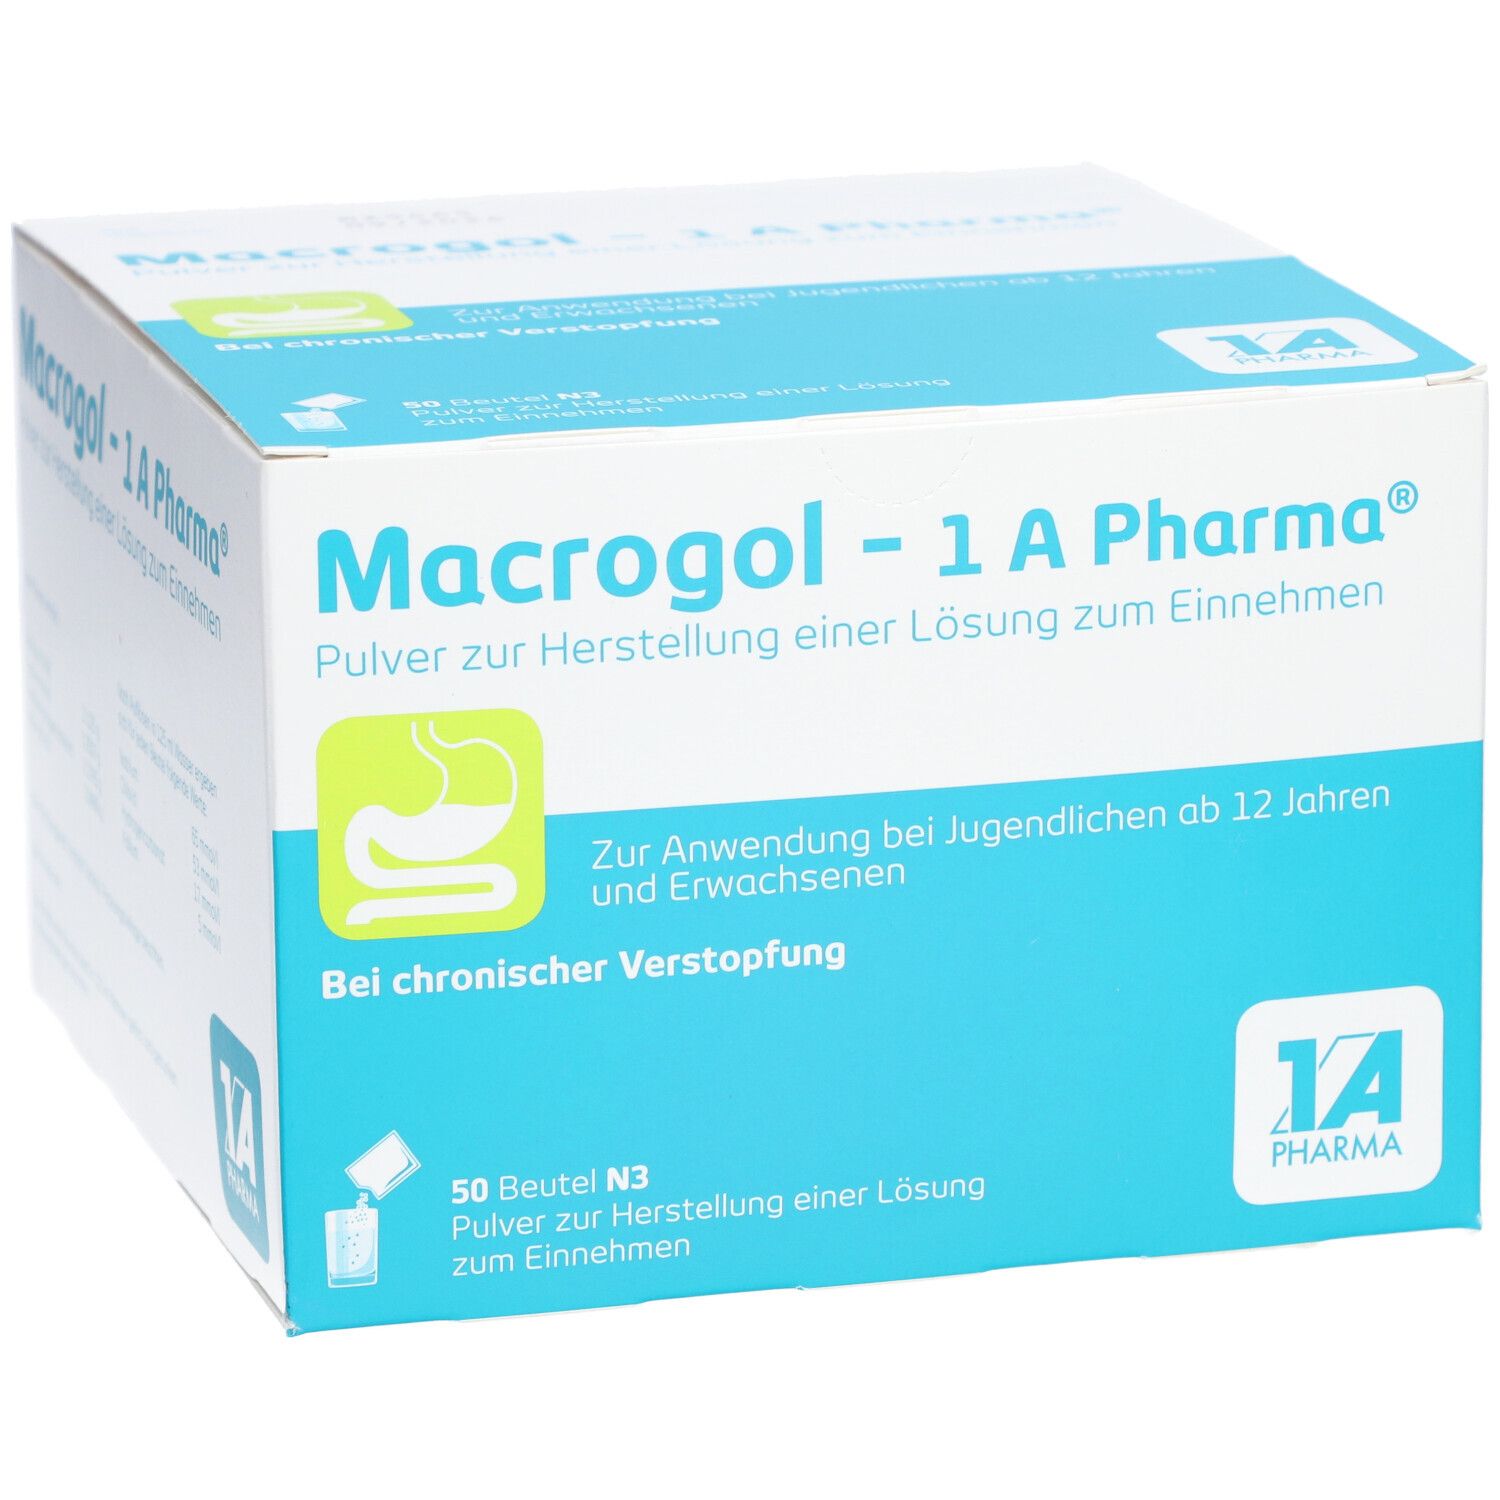 Macrogol - 1A Pharma® Pulver zur Herstellung einer Lösung zum Einnehmen